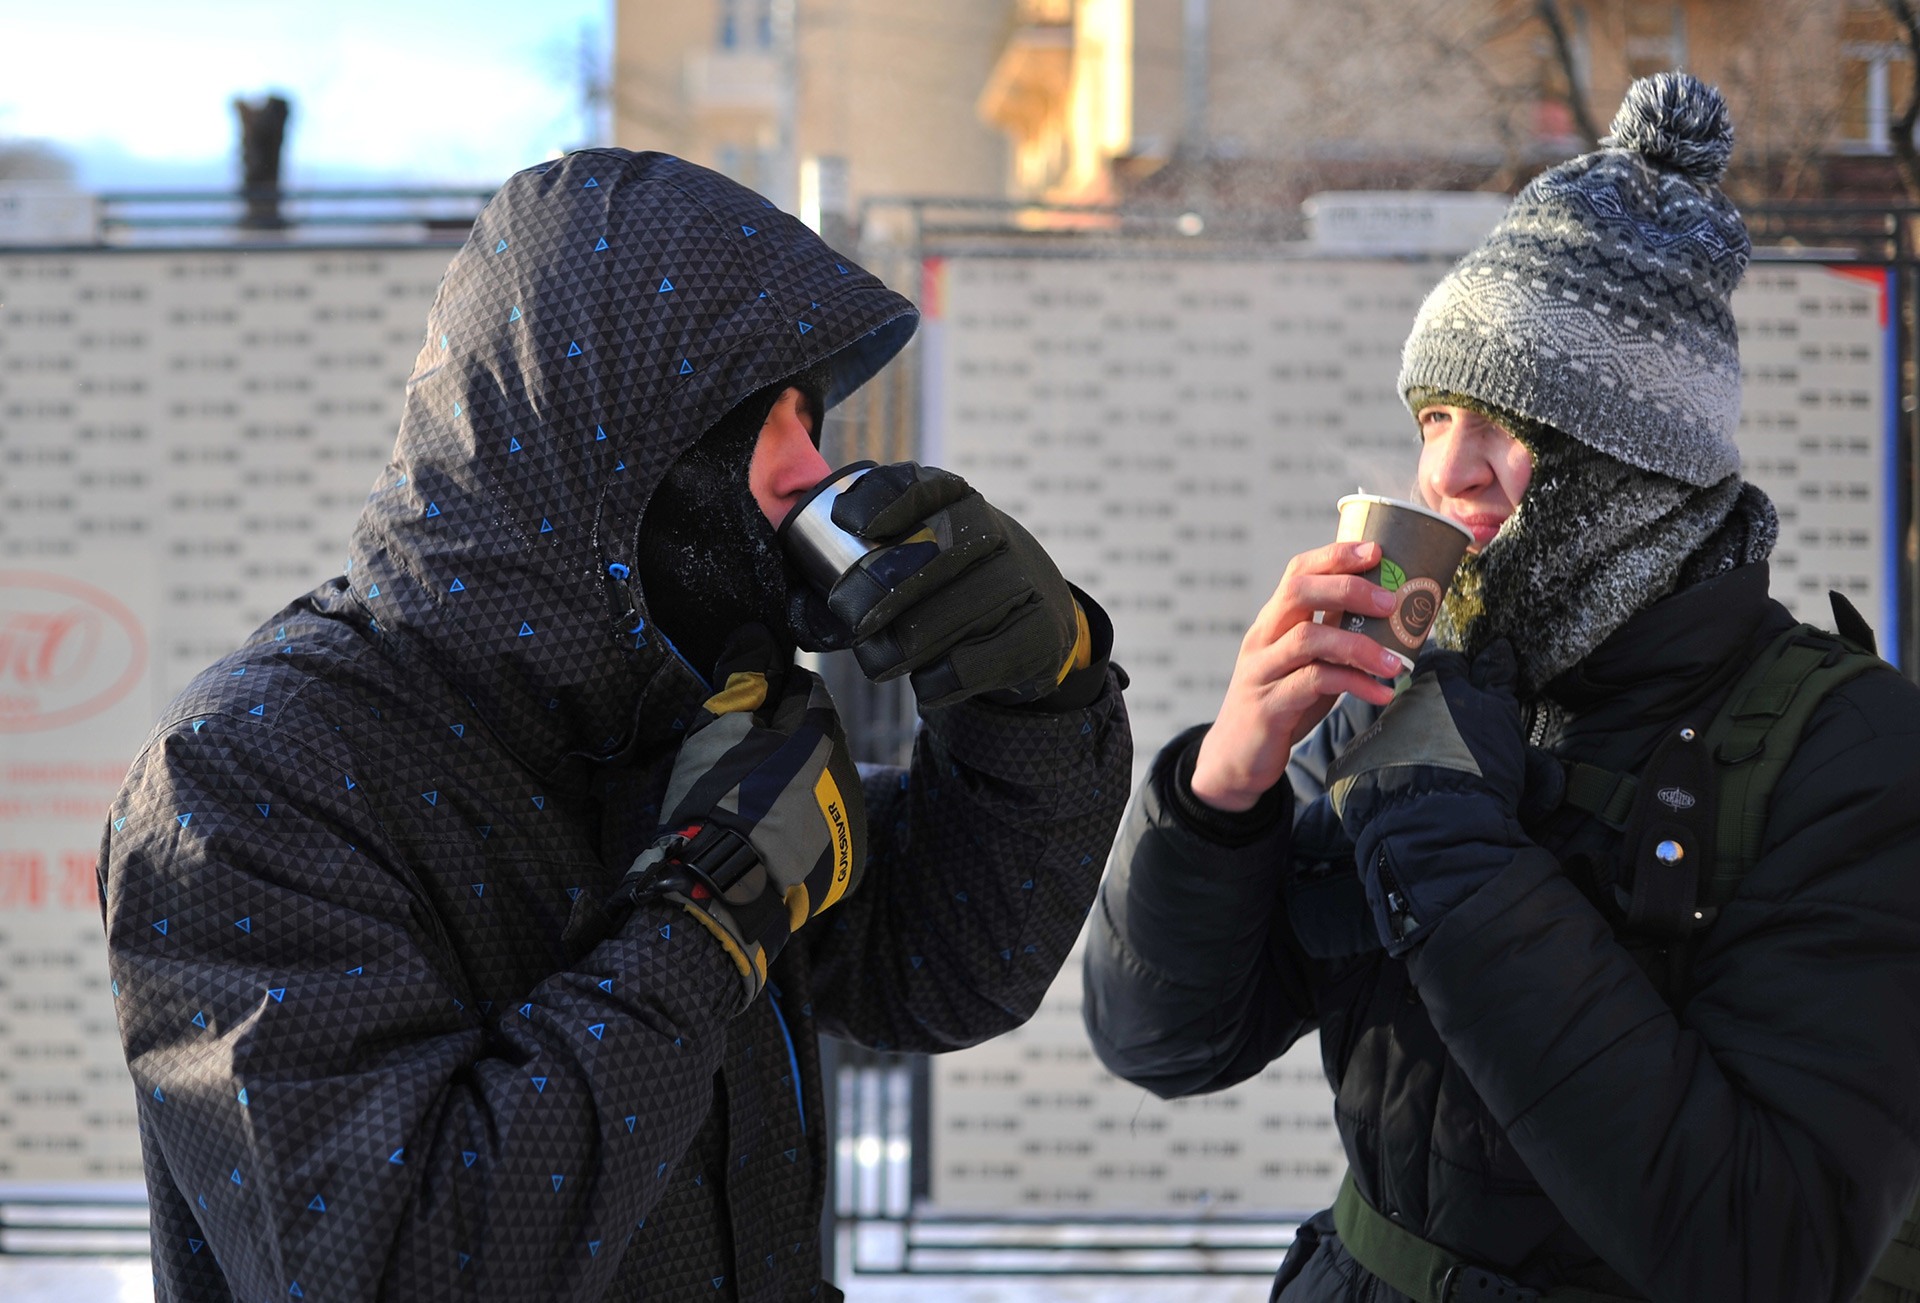 Minuman hangat bisa sangat membantu saat musim dingin.